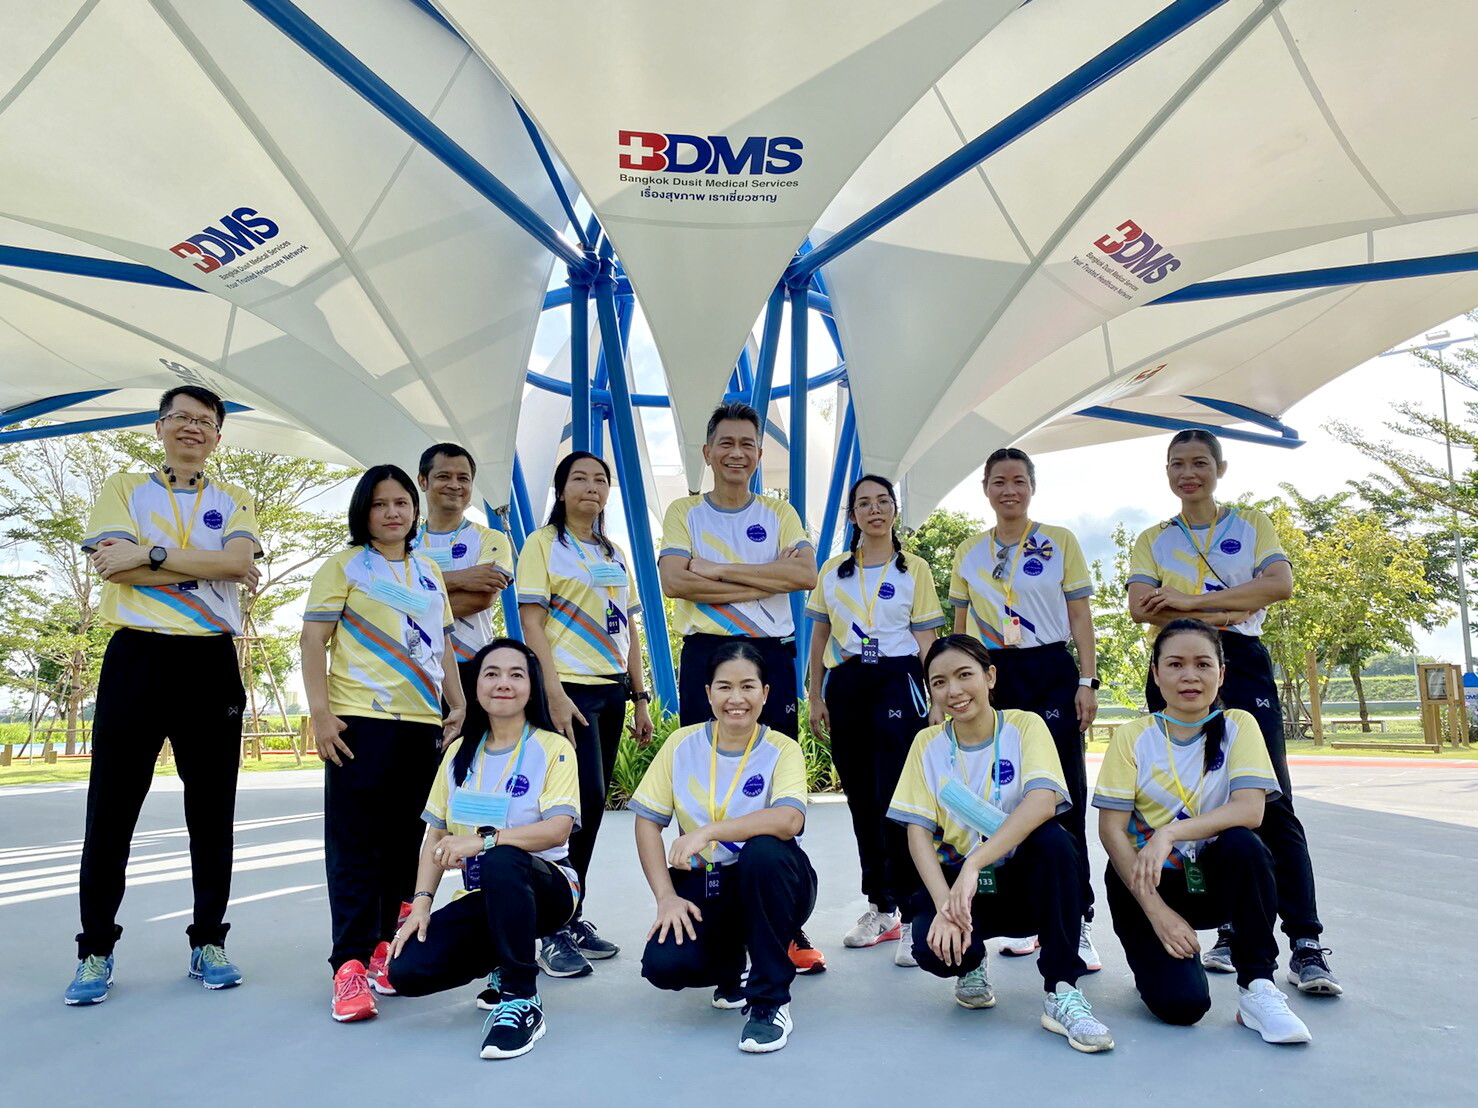 BDMS ร่วมมือกับพันธมิตรและภาคส่วนต่าง ๆ จัดสร้าง “สถานออกกำลังกายกลางแจ้ง” เพื่อเสริมสร้างสุขภาพแก่สังคมไทย